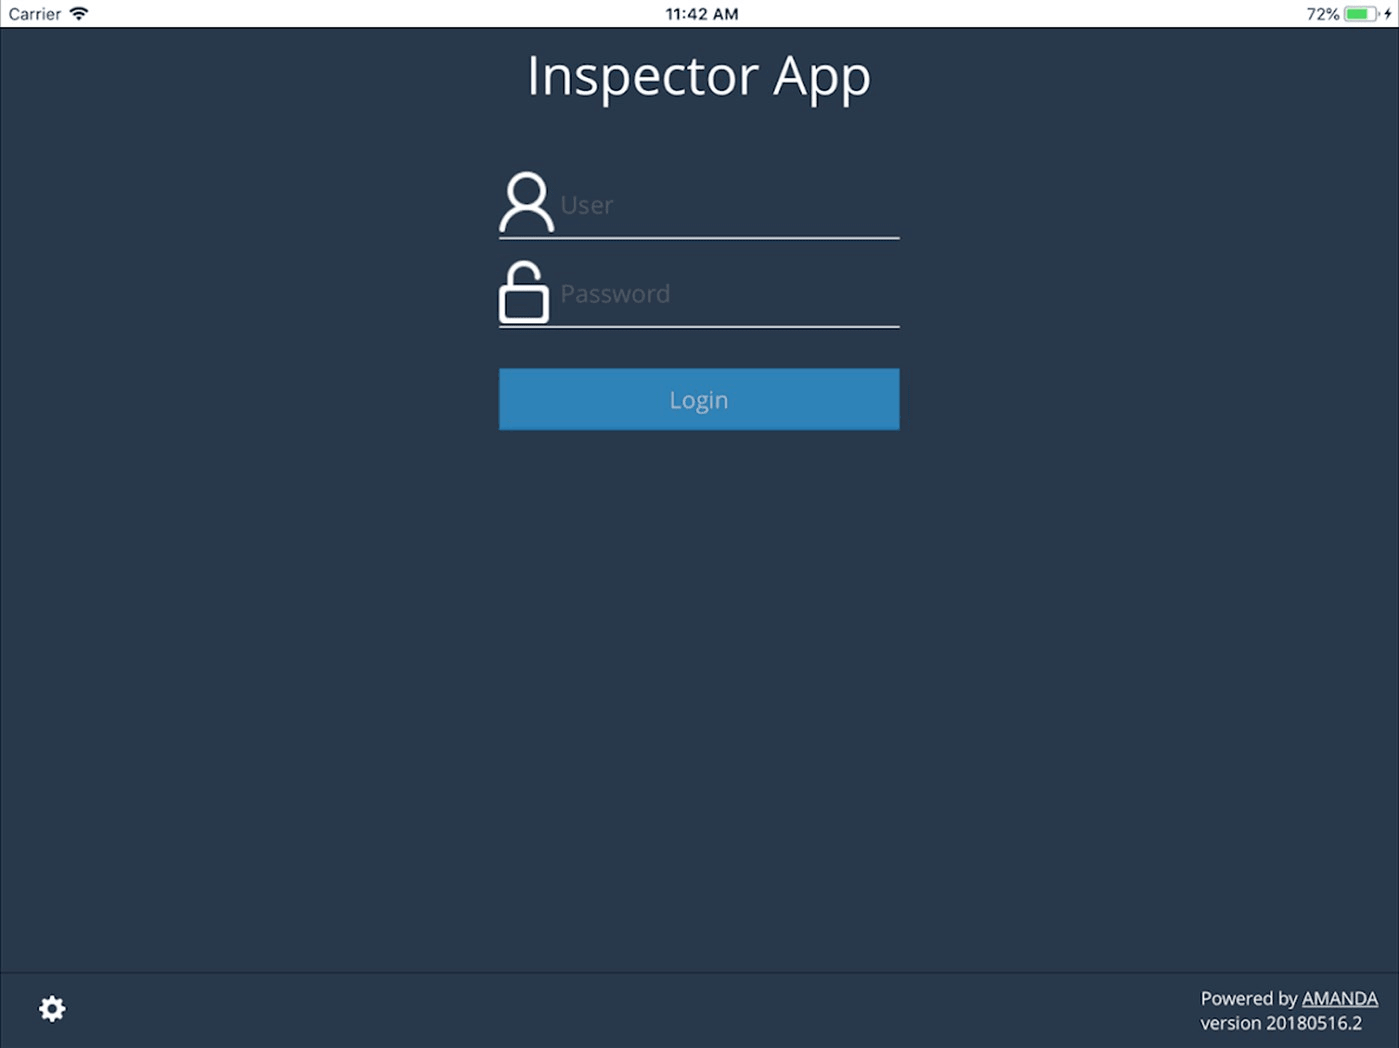 AMANDA Inspector App